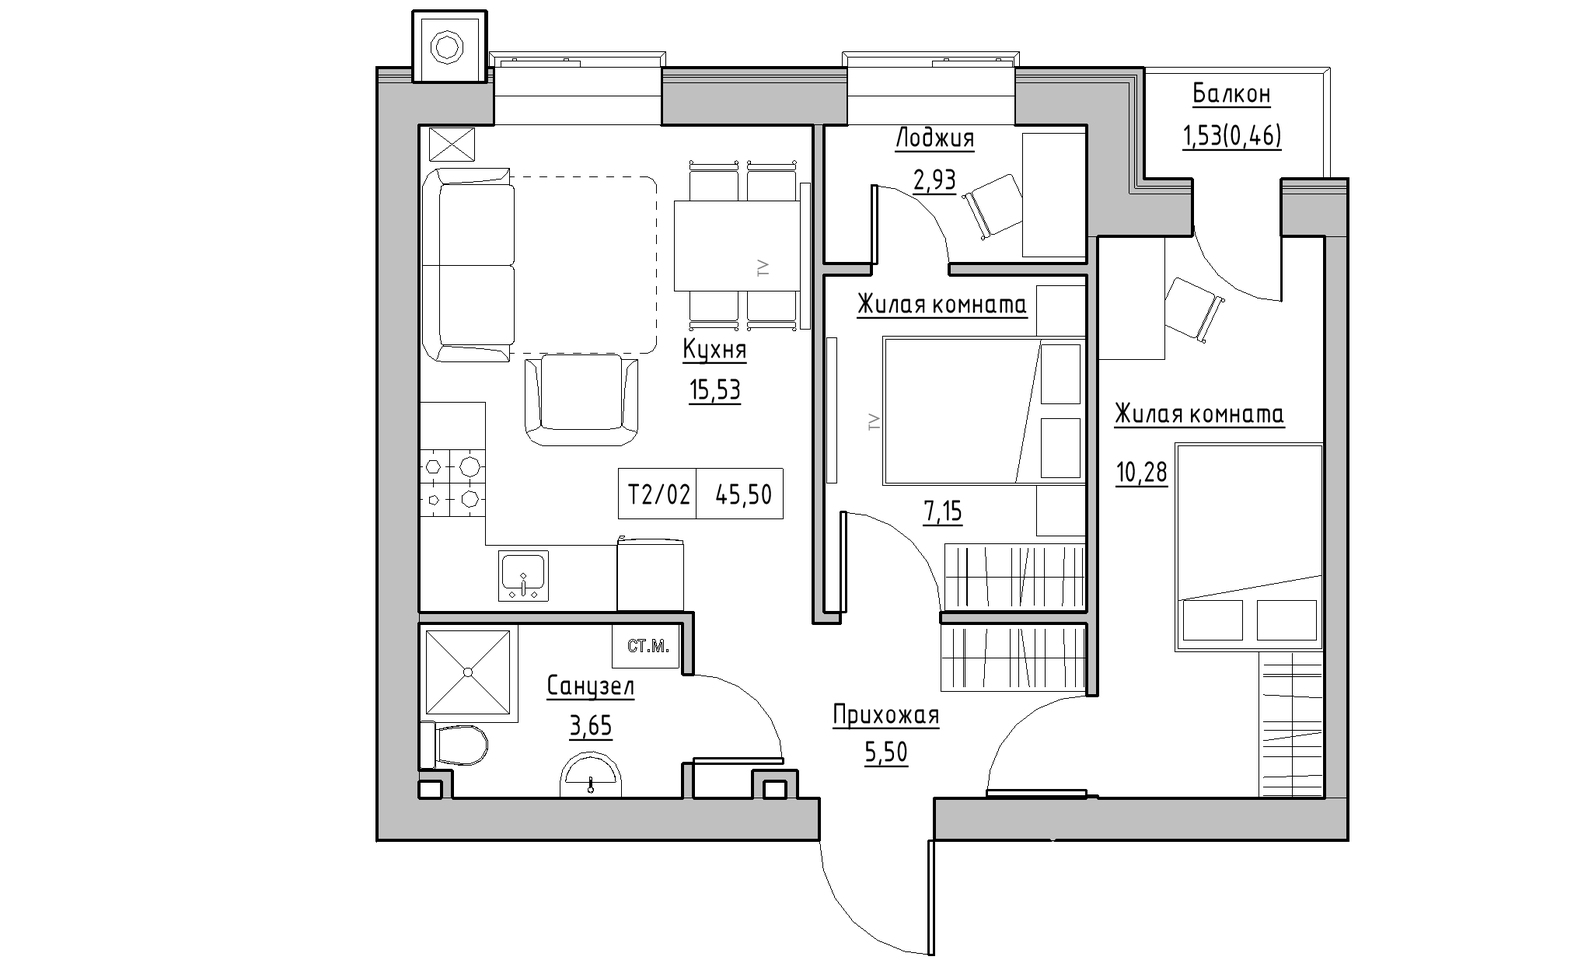 Планування 2-к квартира площею 45.5м2, KS-014-04/0008.